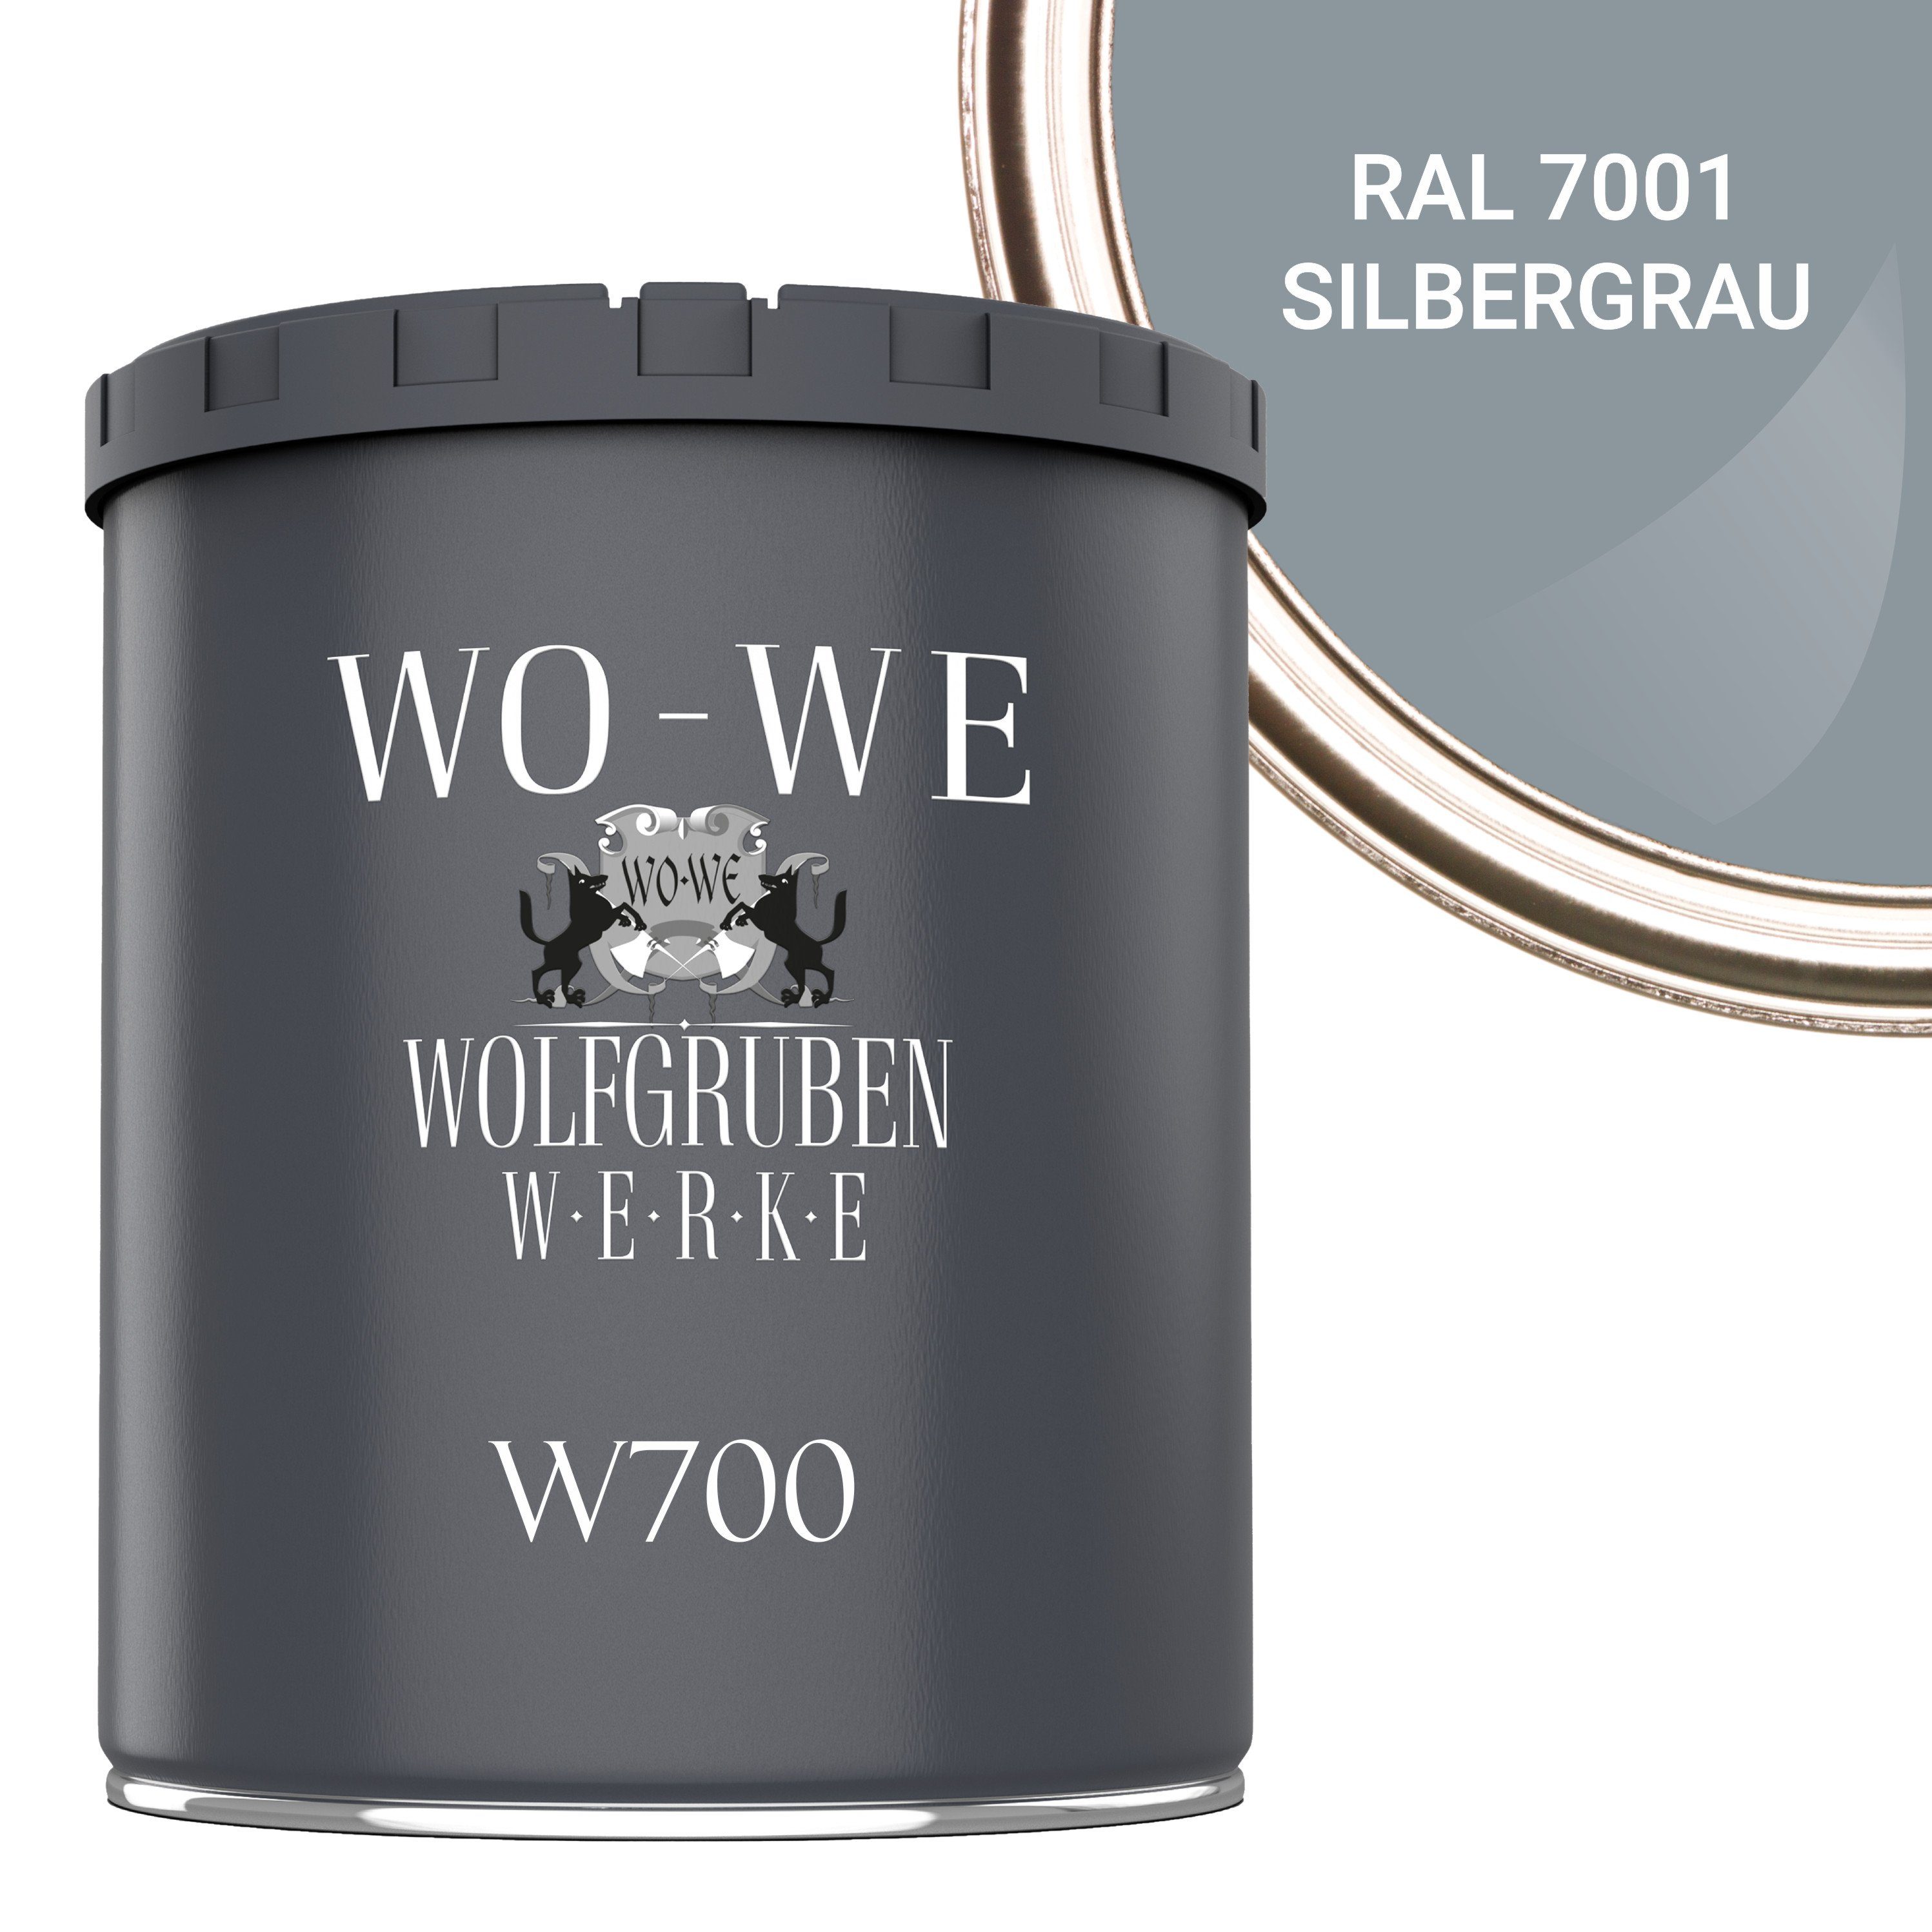 WO-WE Bodenversiegelung Betonfarbe Silbergrau Bodenbeschichtung Bodenfarbe W700, 1-10L, RAL 7001 Seidenglänzend